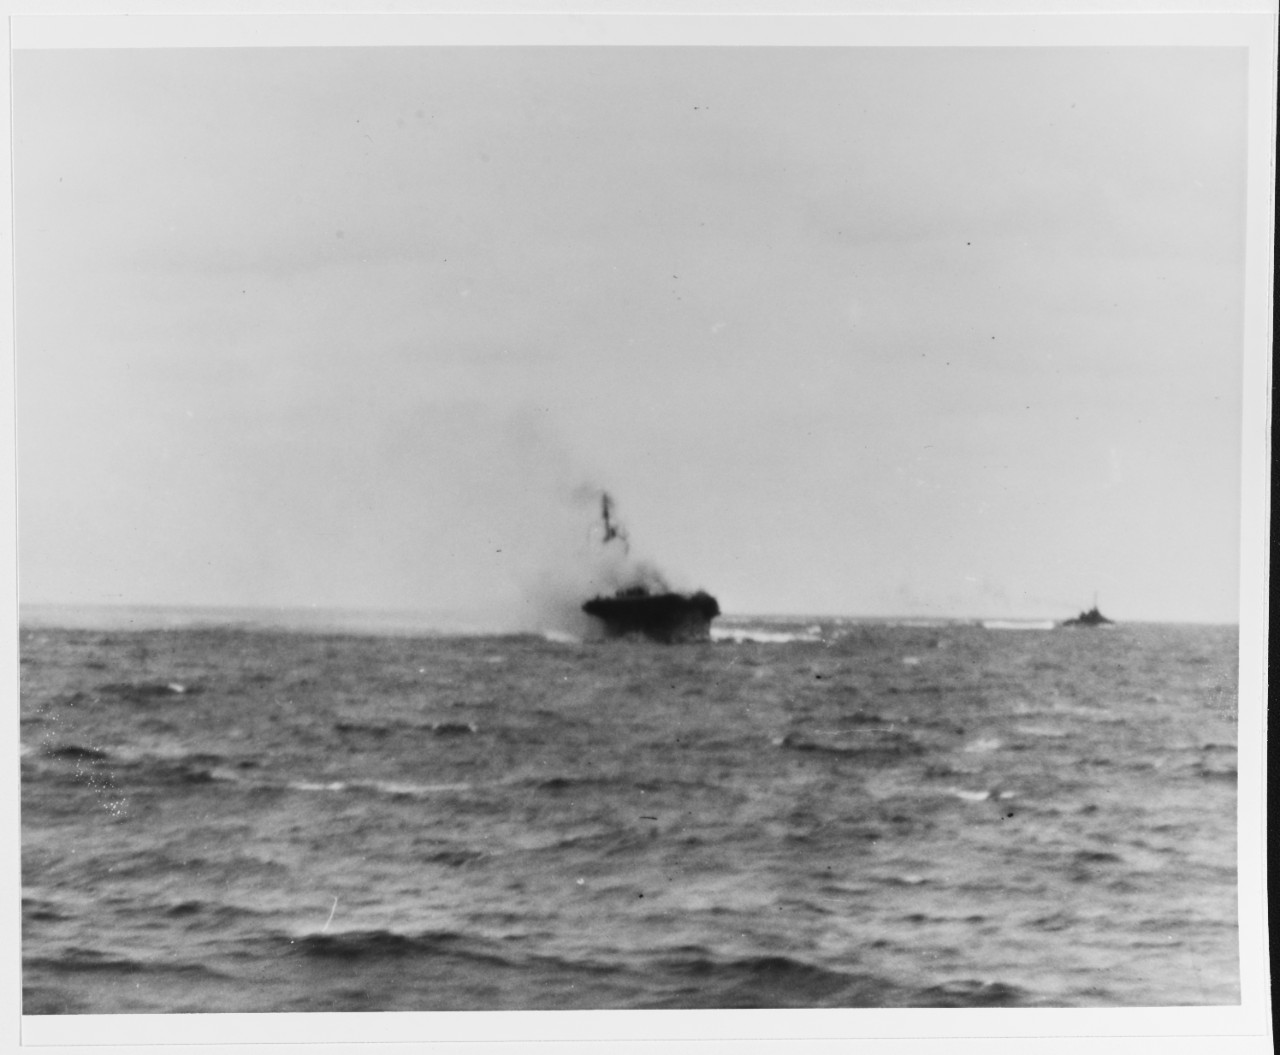 USS SARATOGA (CV-3)